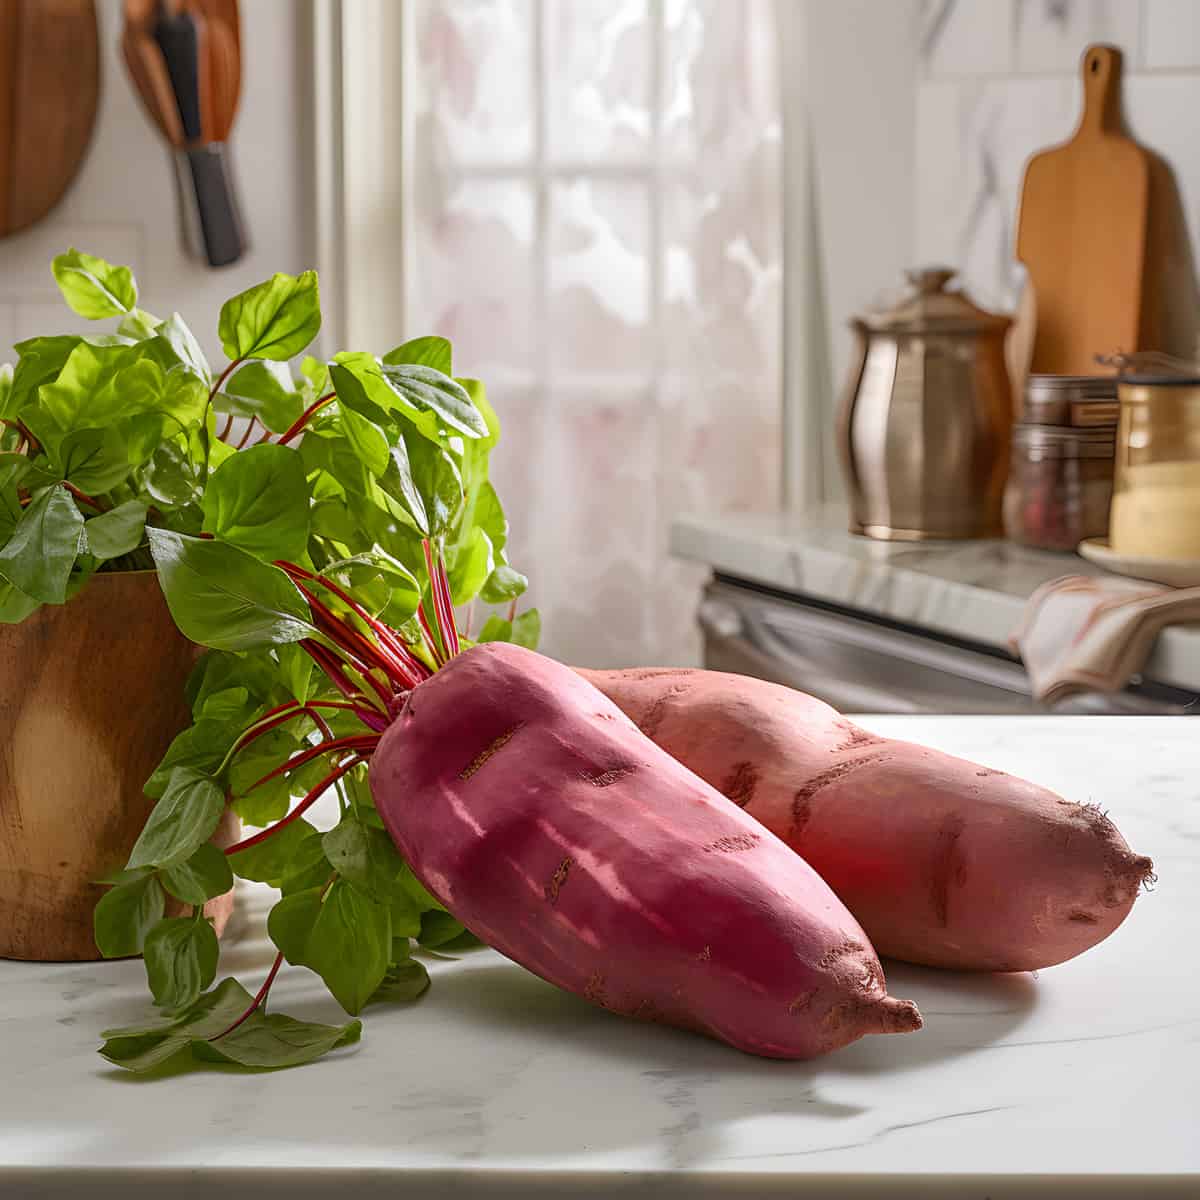 Carolina Ruby Sweet Potatoes on a kitchen counter